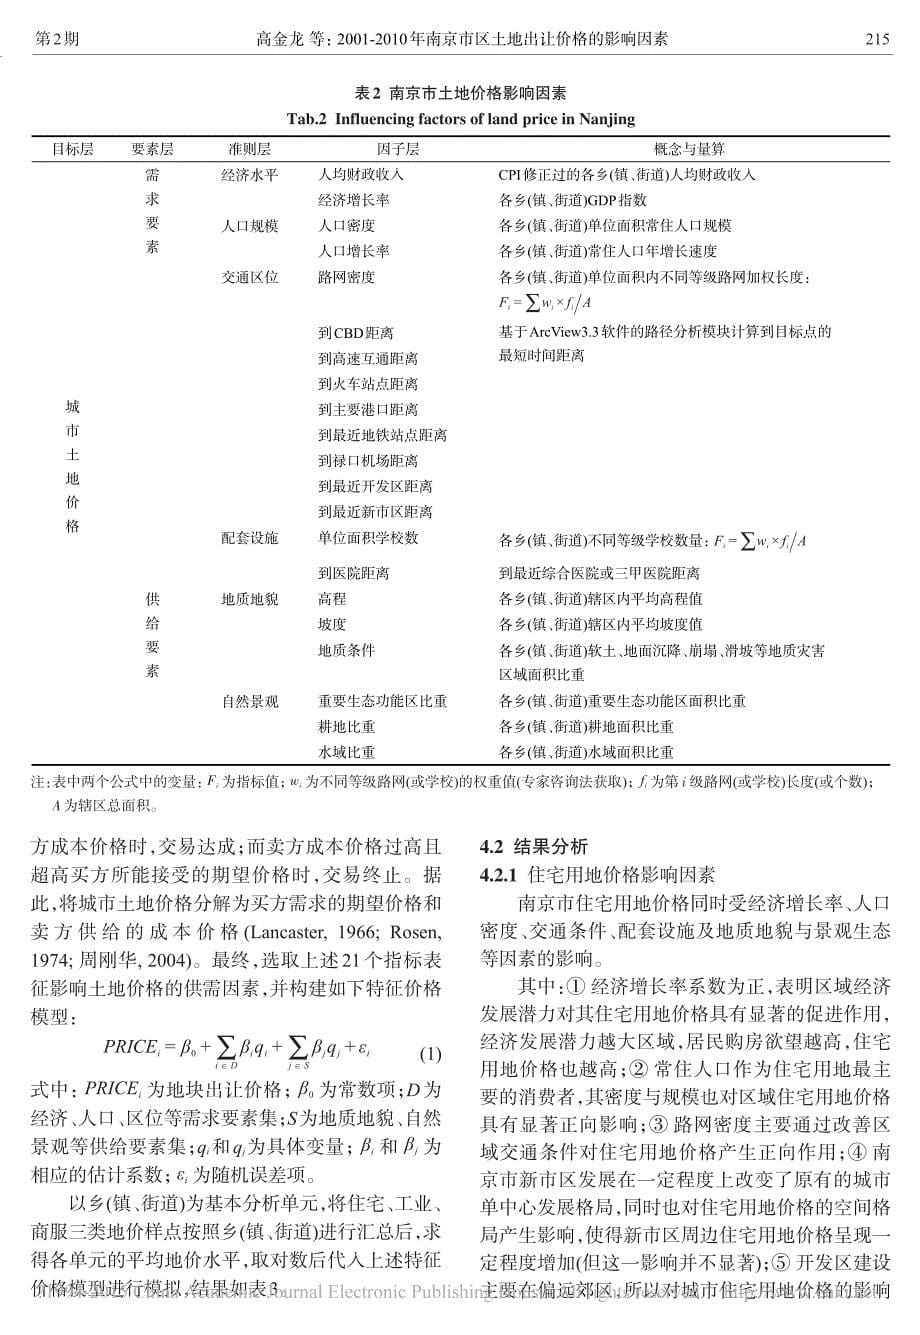 2001_2010年南京市区土地出让价格的影响因素_高金龙_第5页